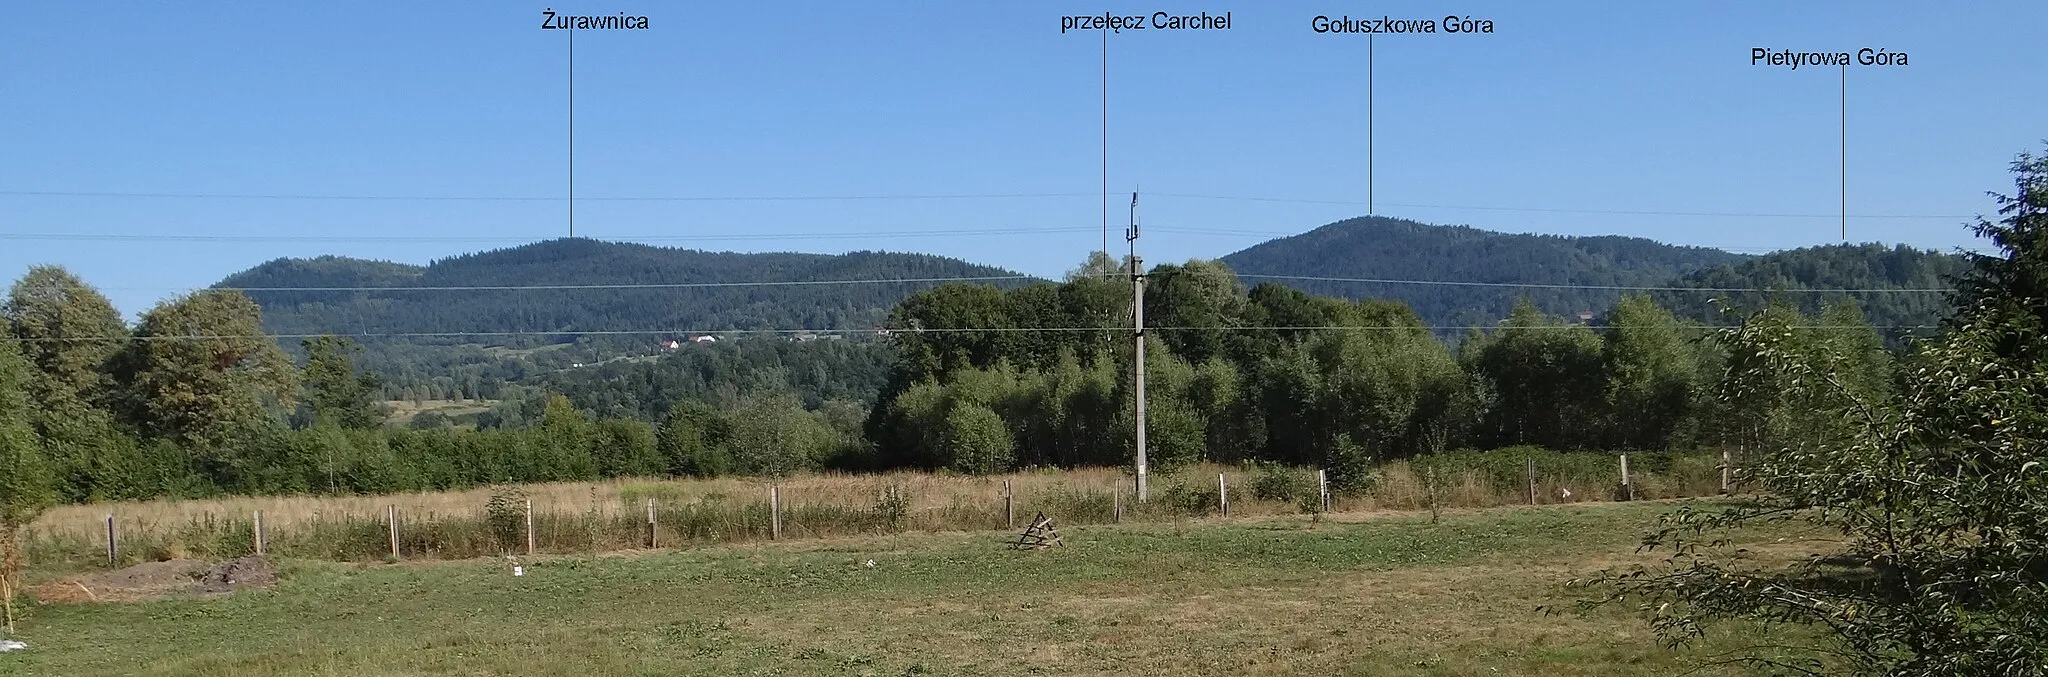 Photo showing: Widok ze Stryszawy: Od lewej: Żurawnica, przełęcz Carchel, Gołuszkowa Góra, Pietyrowa Góra